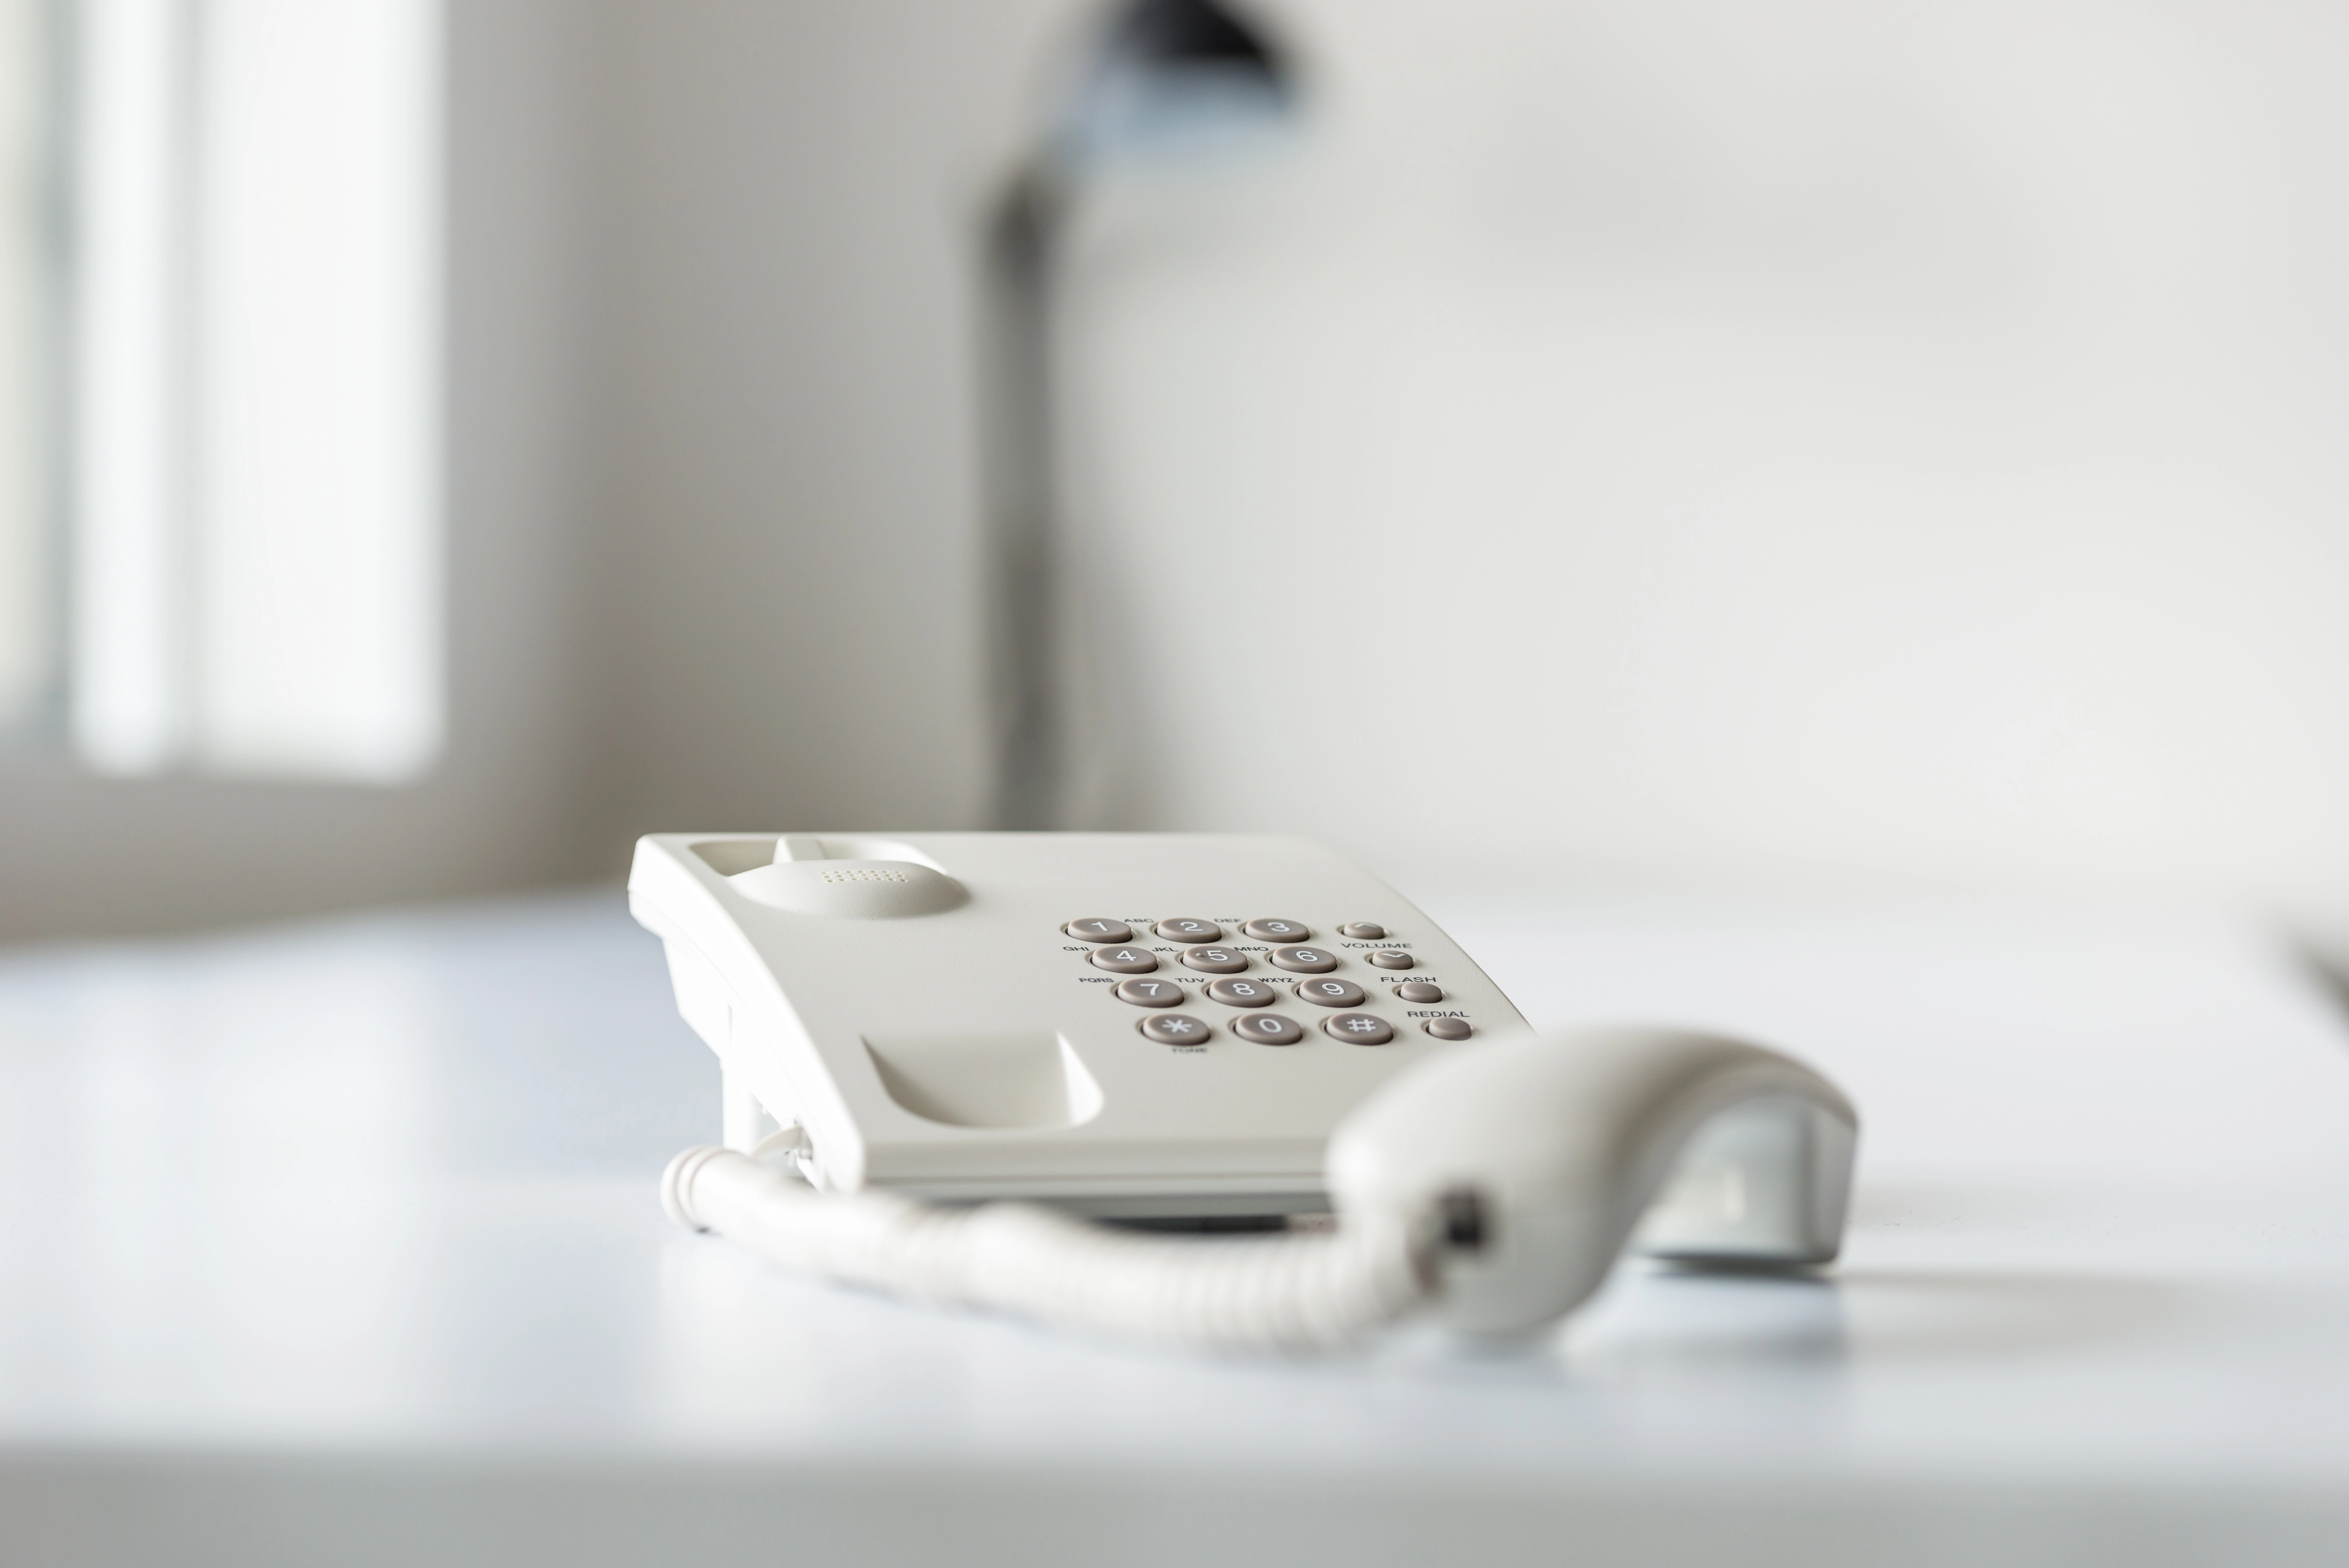 Ventajas de tener un teléfono fijo en casa - Blog Netllar